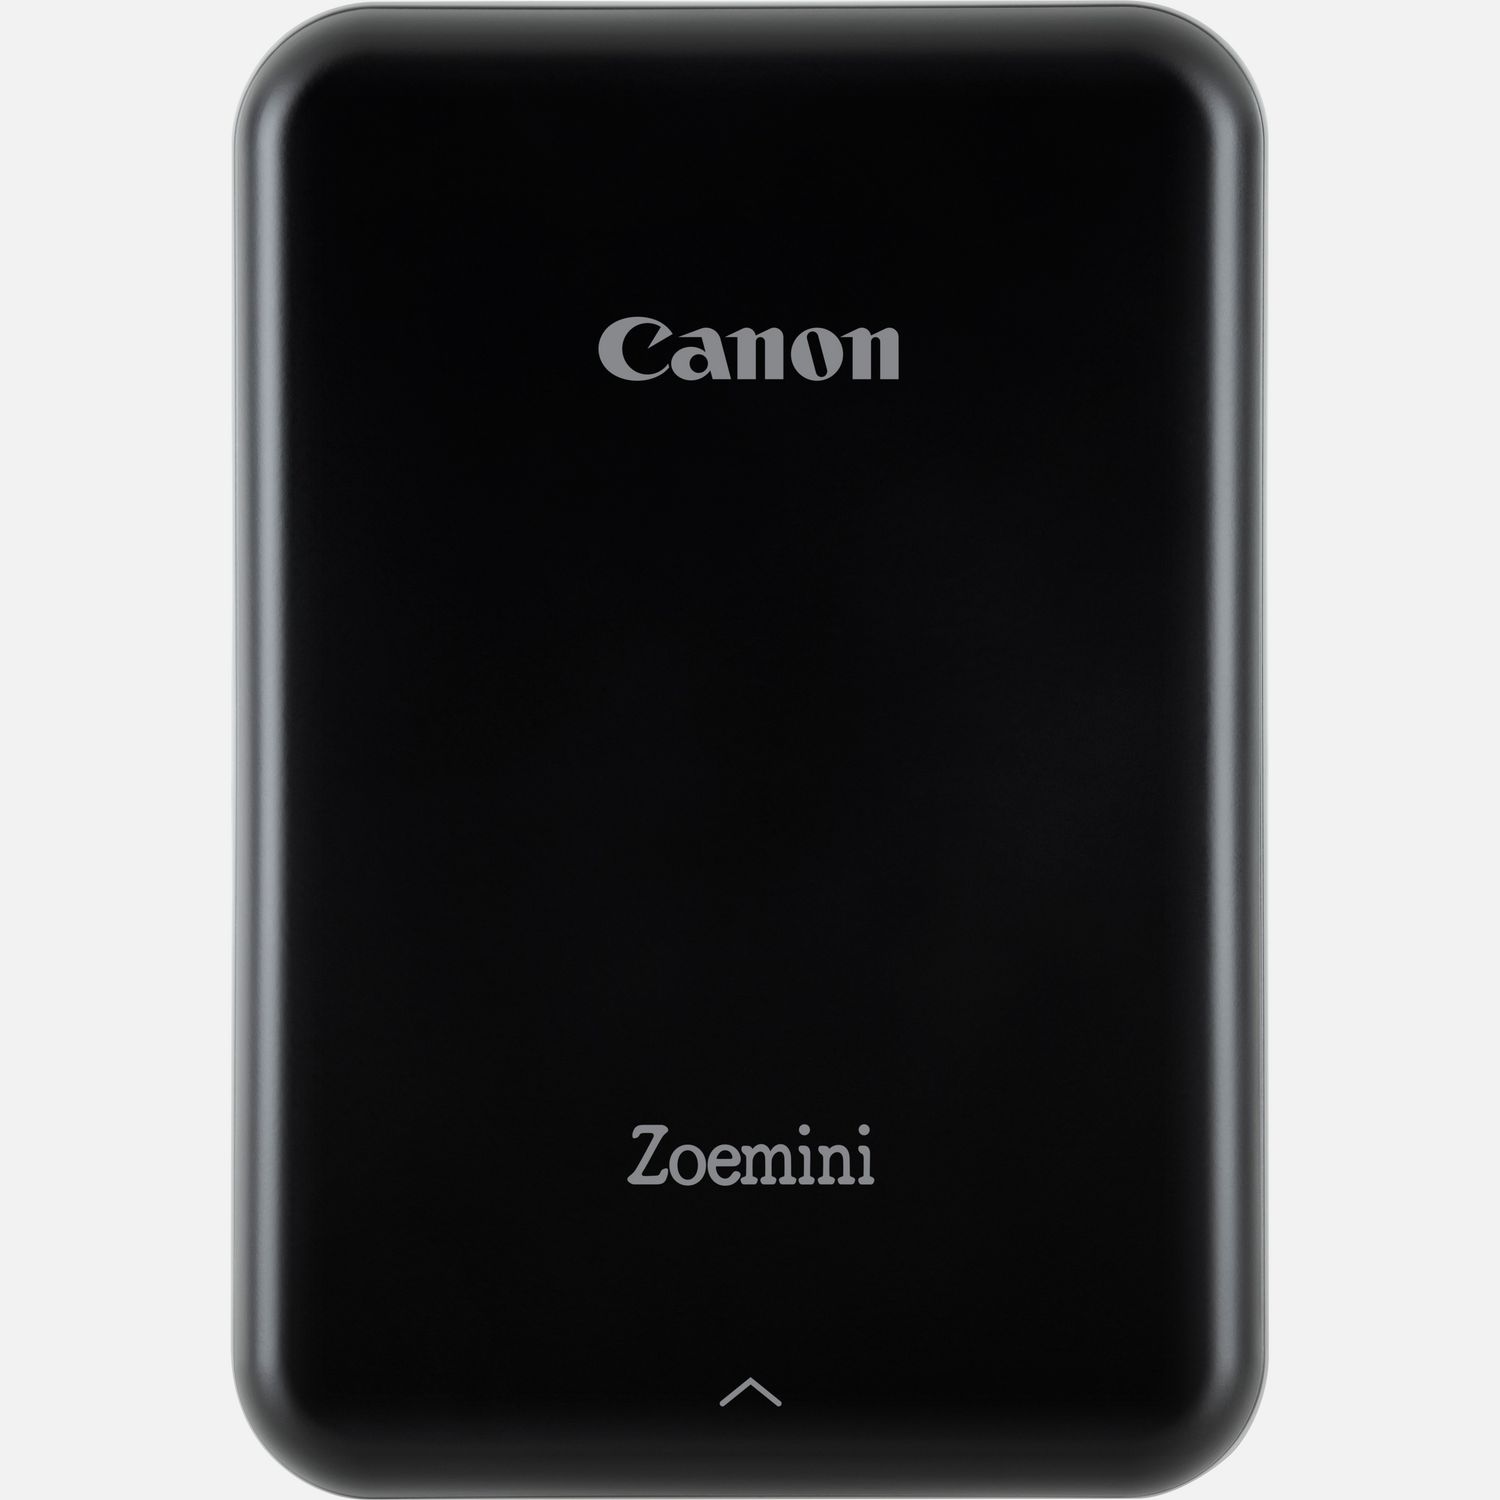 Image of Stampante fotografica portatile Canon Zoemini, nera